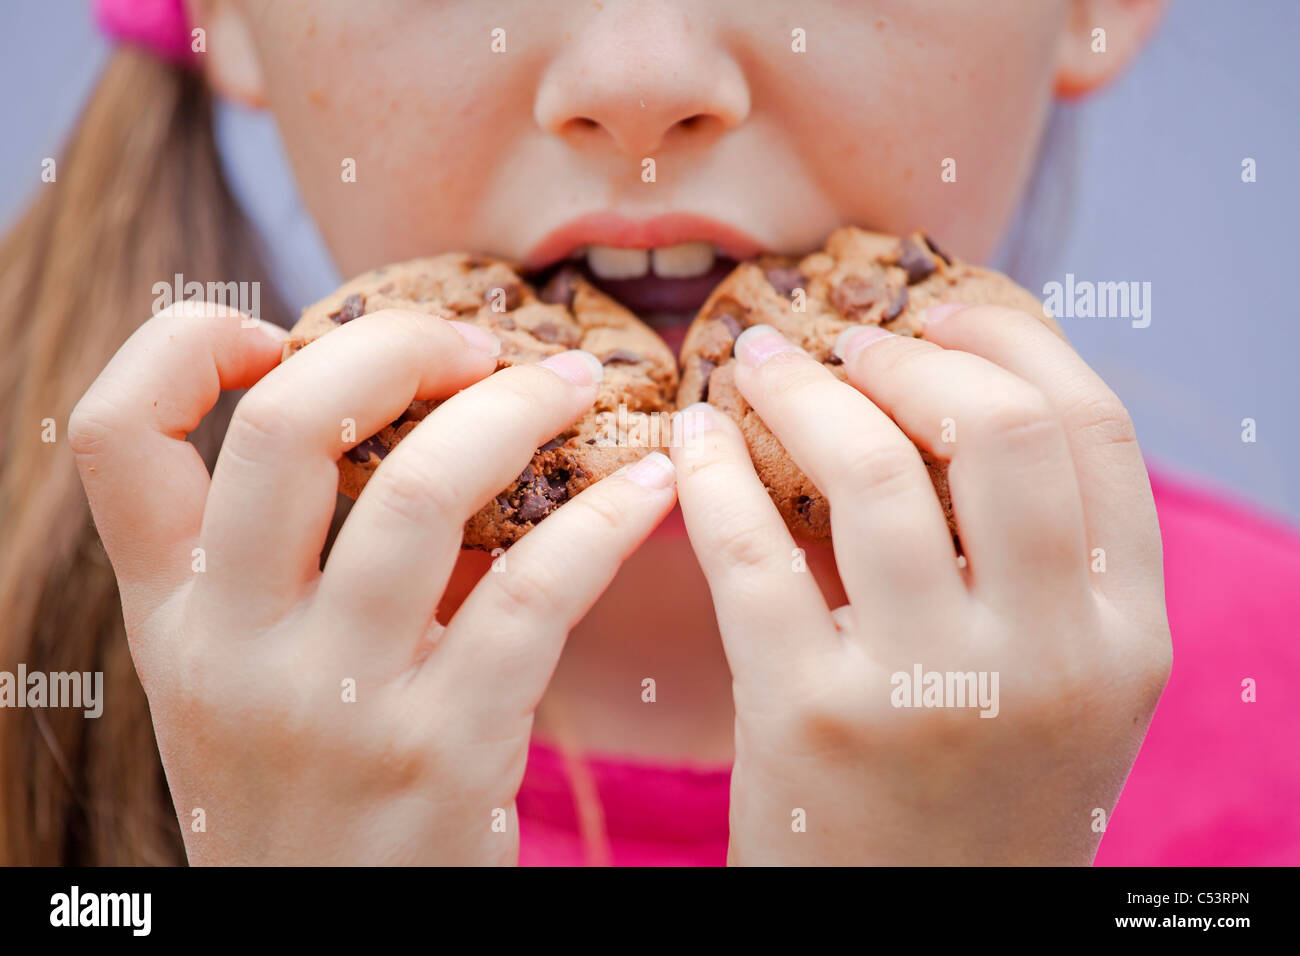 ein sieben-jährige Mädchen essen Schokolade cookies Stockfoto